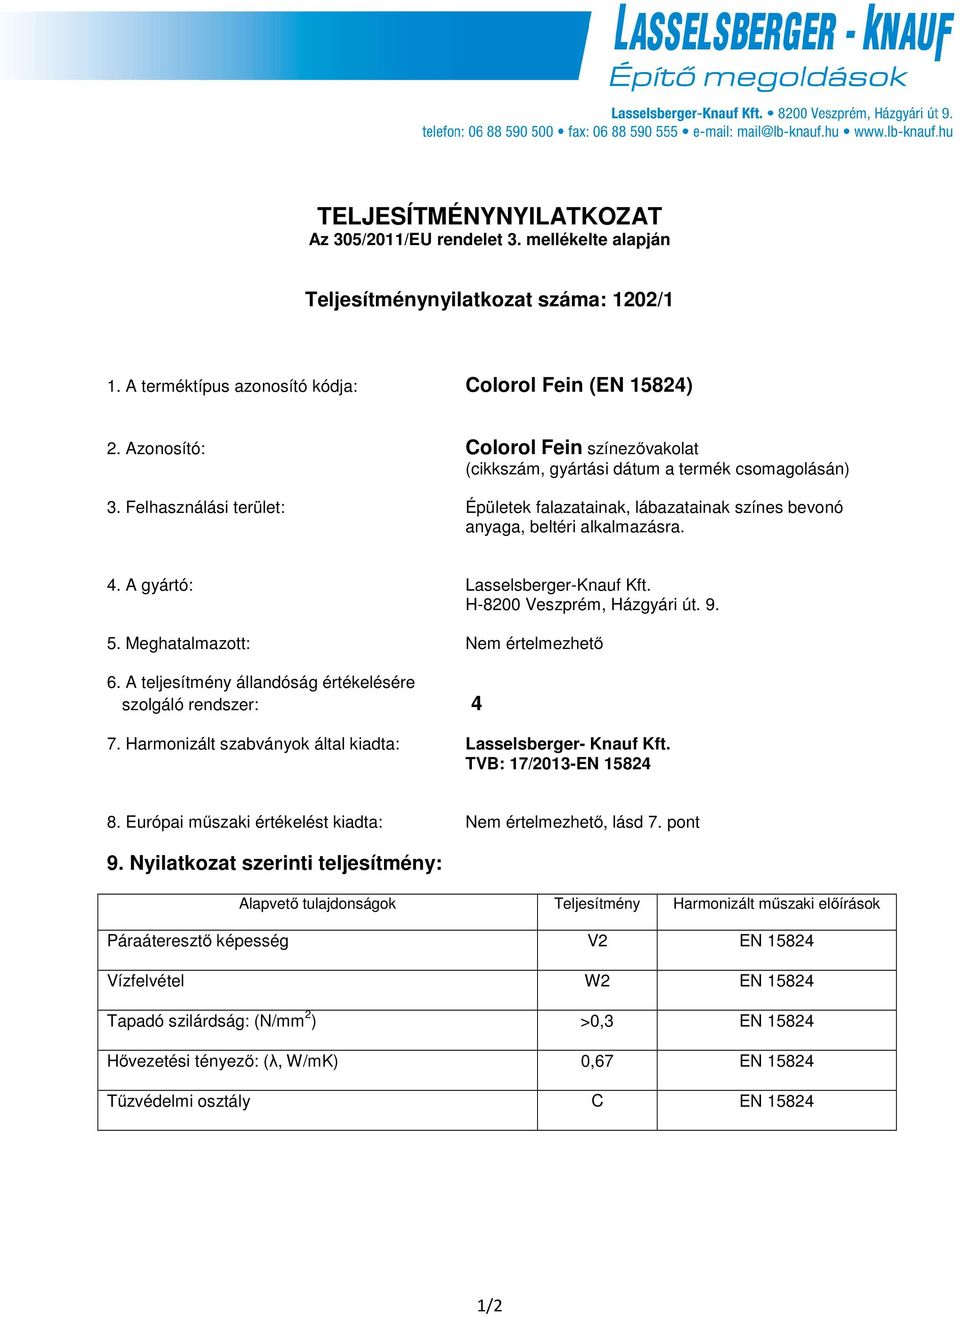 A gyártó: Lasselsberger-Knauf Kft. H-8200 Veszprém, Házgyári út. 9. 5. Meghatalmazott: Nem értelmezhető 6. A teljesítmény állandóság értékelésére szolgáló rendszer: 4 7.